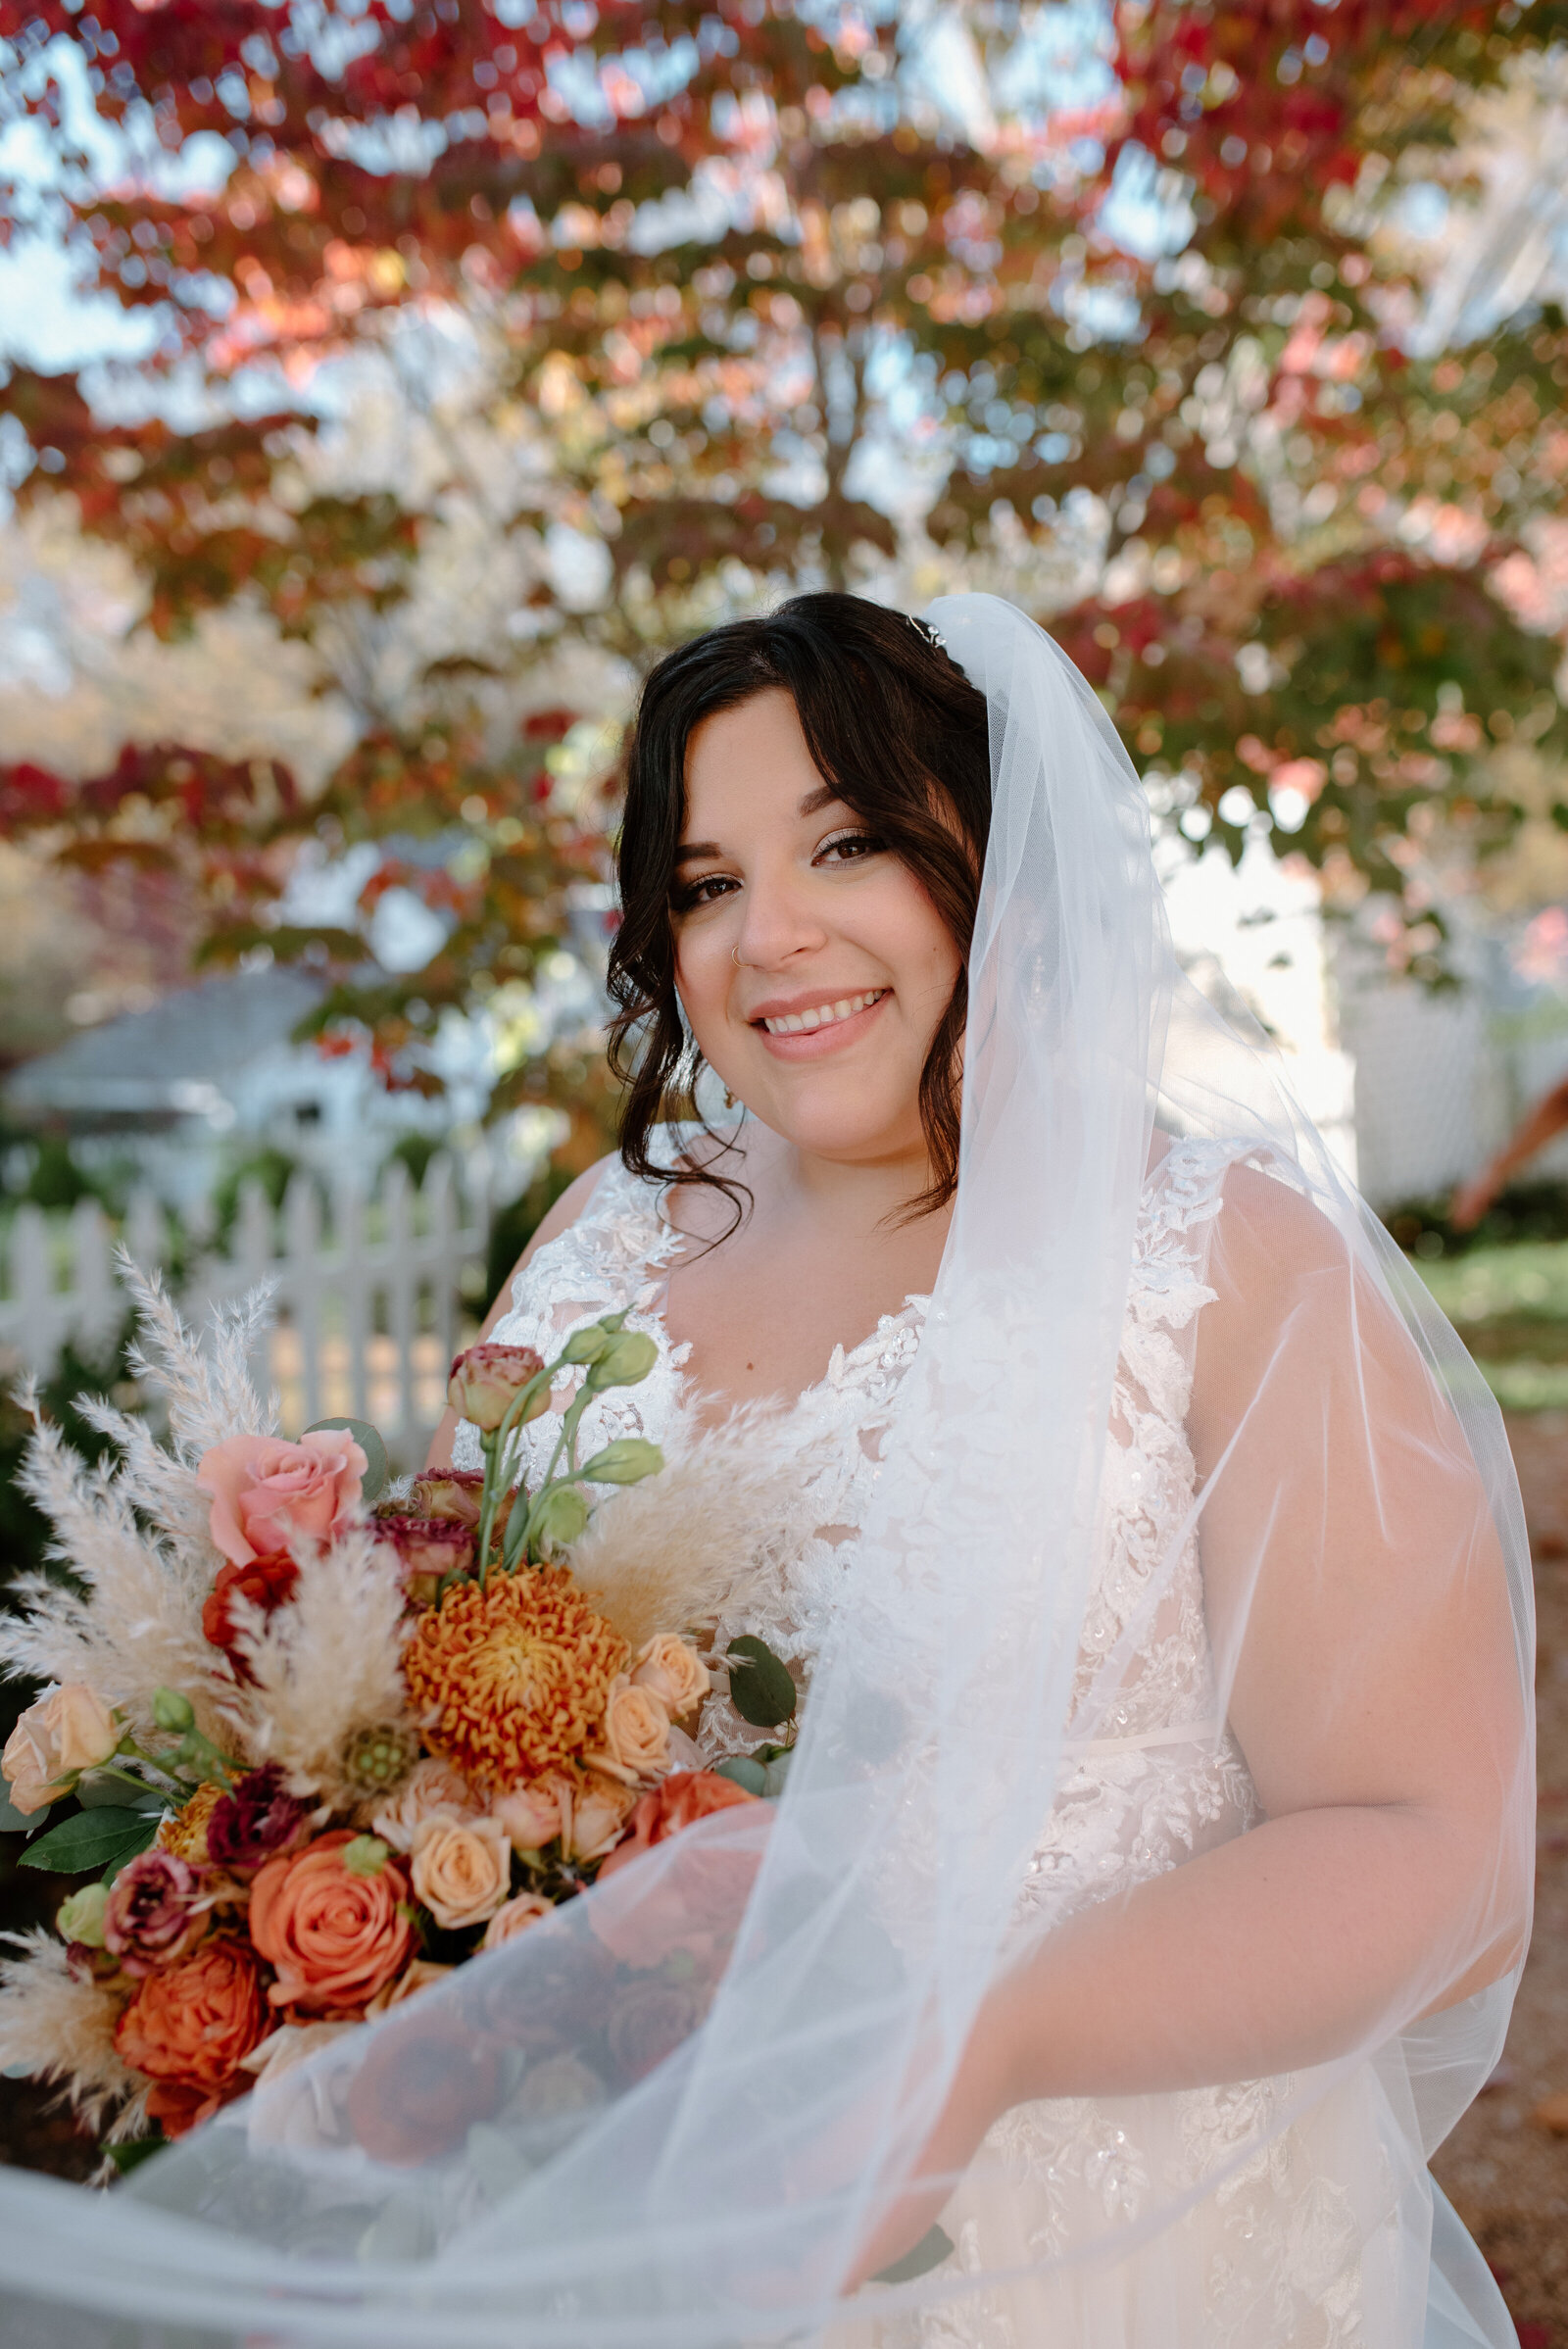 Wedding Photos | Norfolk Virginia Photographer